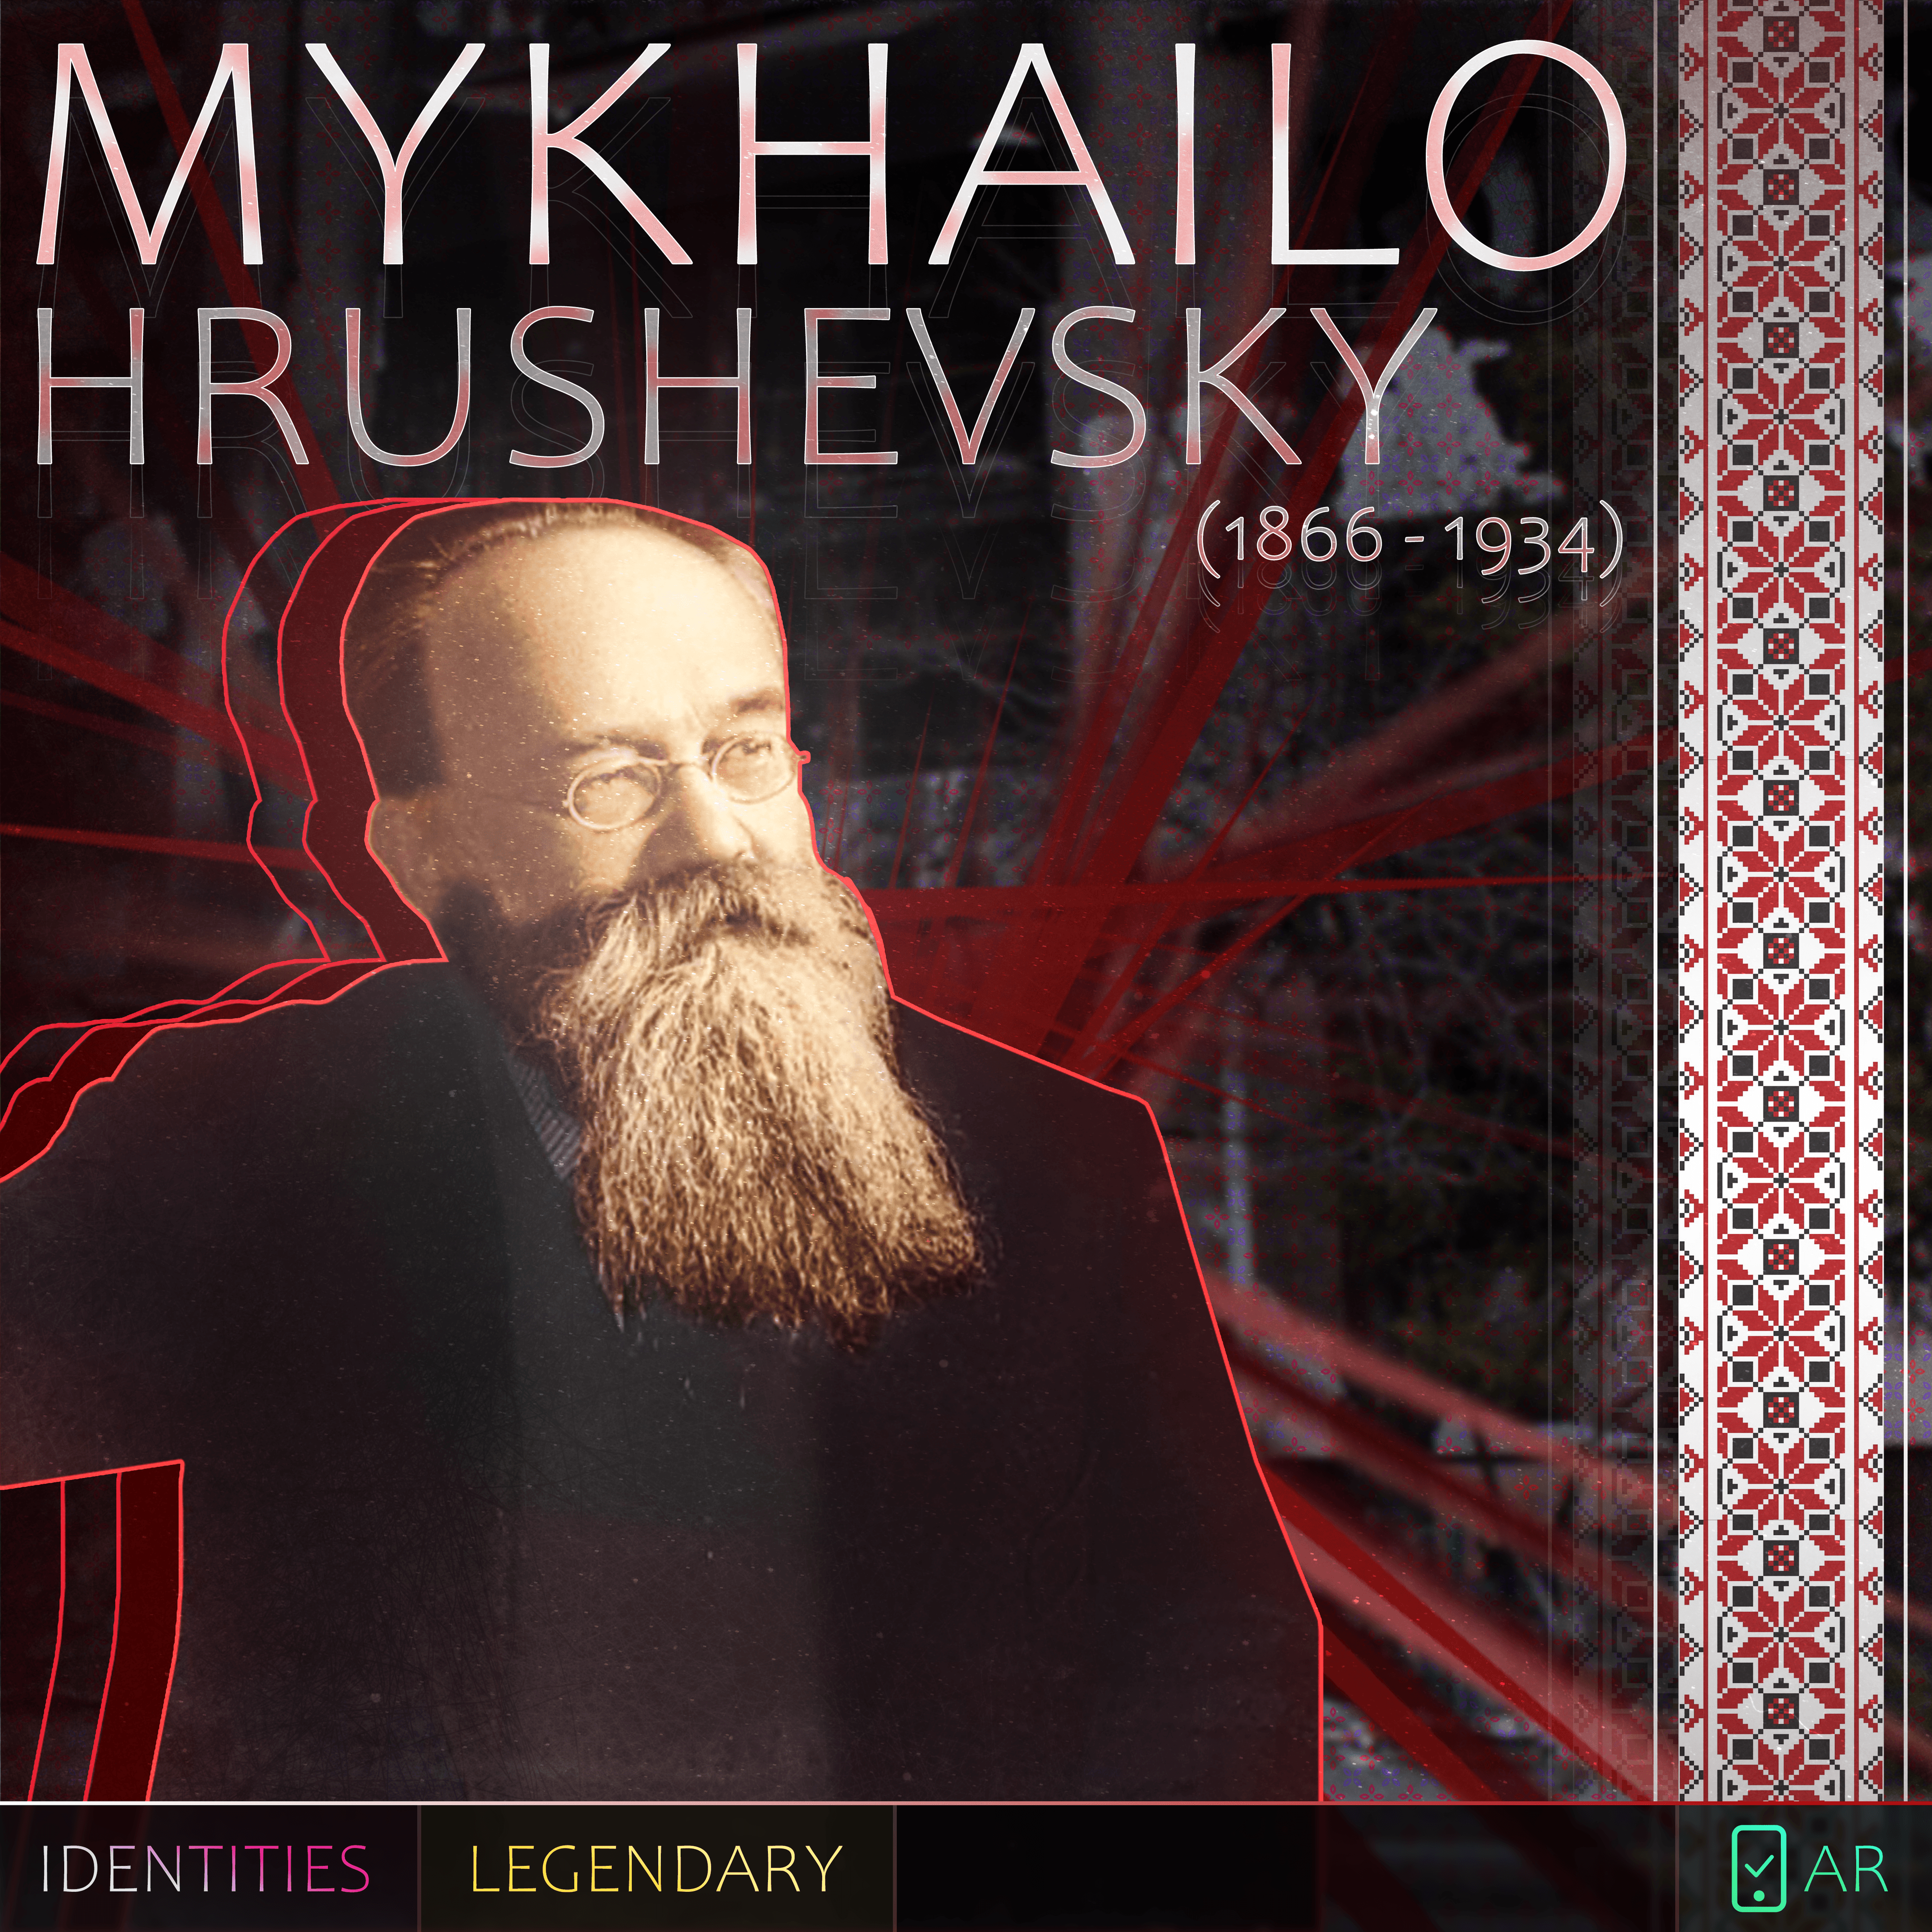 Mykhailo Hrushevsky